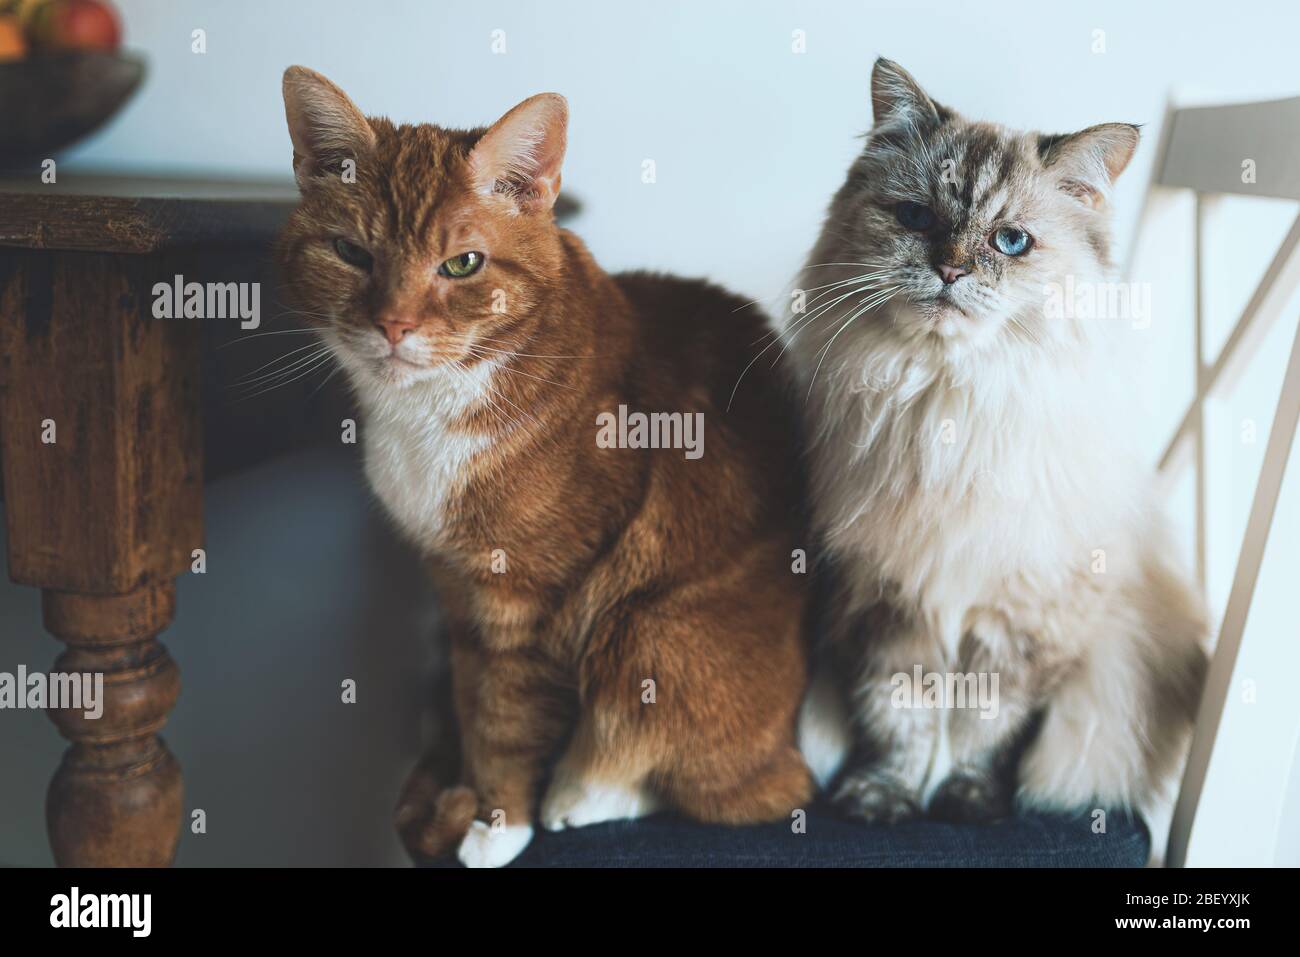 due gatti domestici seduti sulla sedia accanto al tavolo da cucina guardando direttamente la macchina fotografica Foto Stock